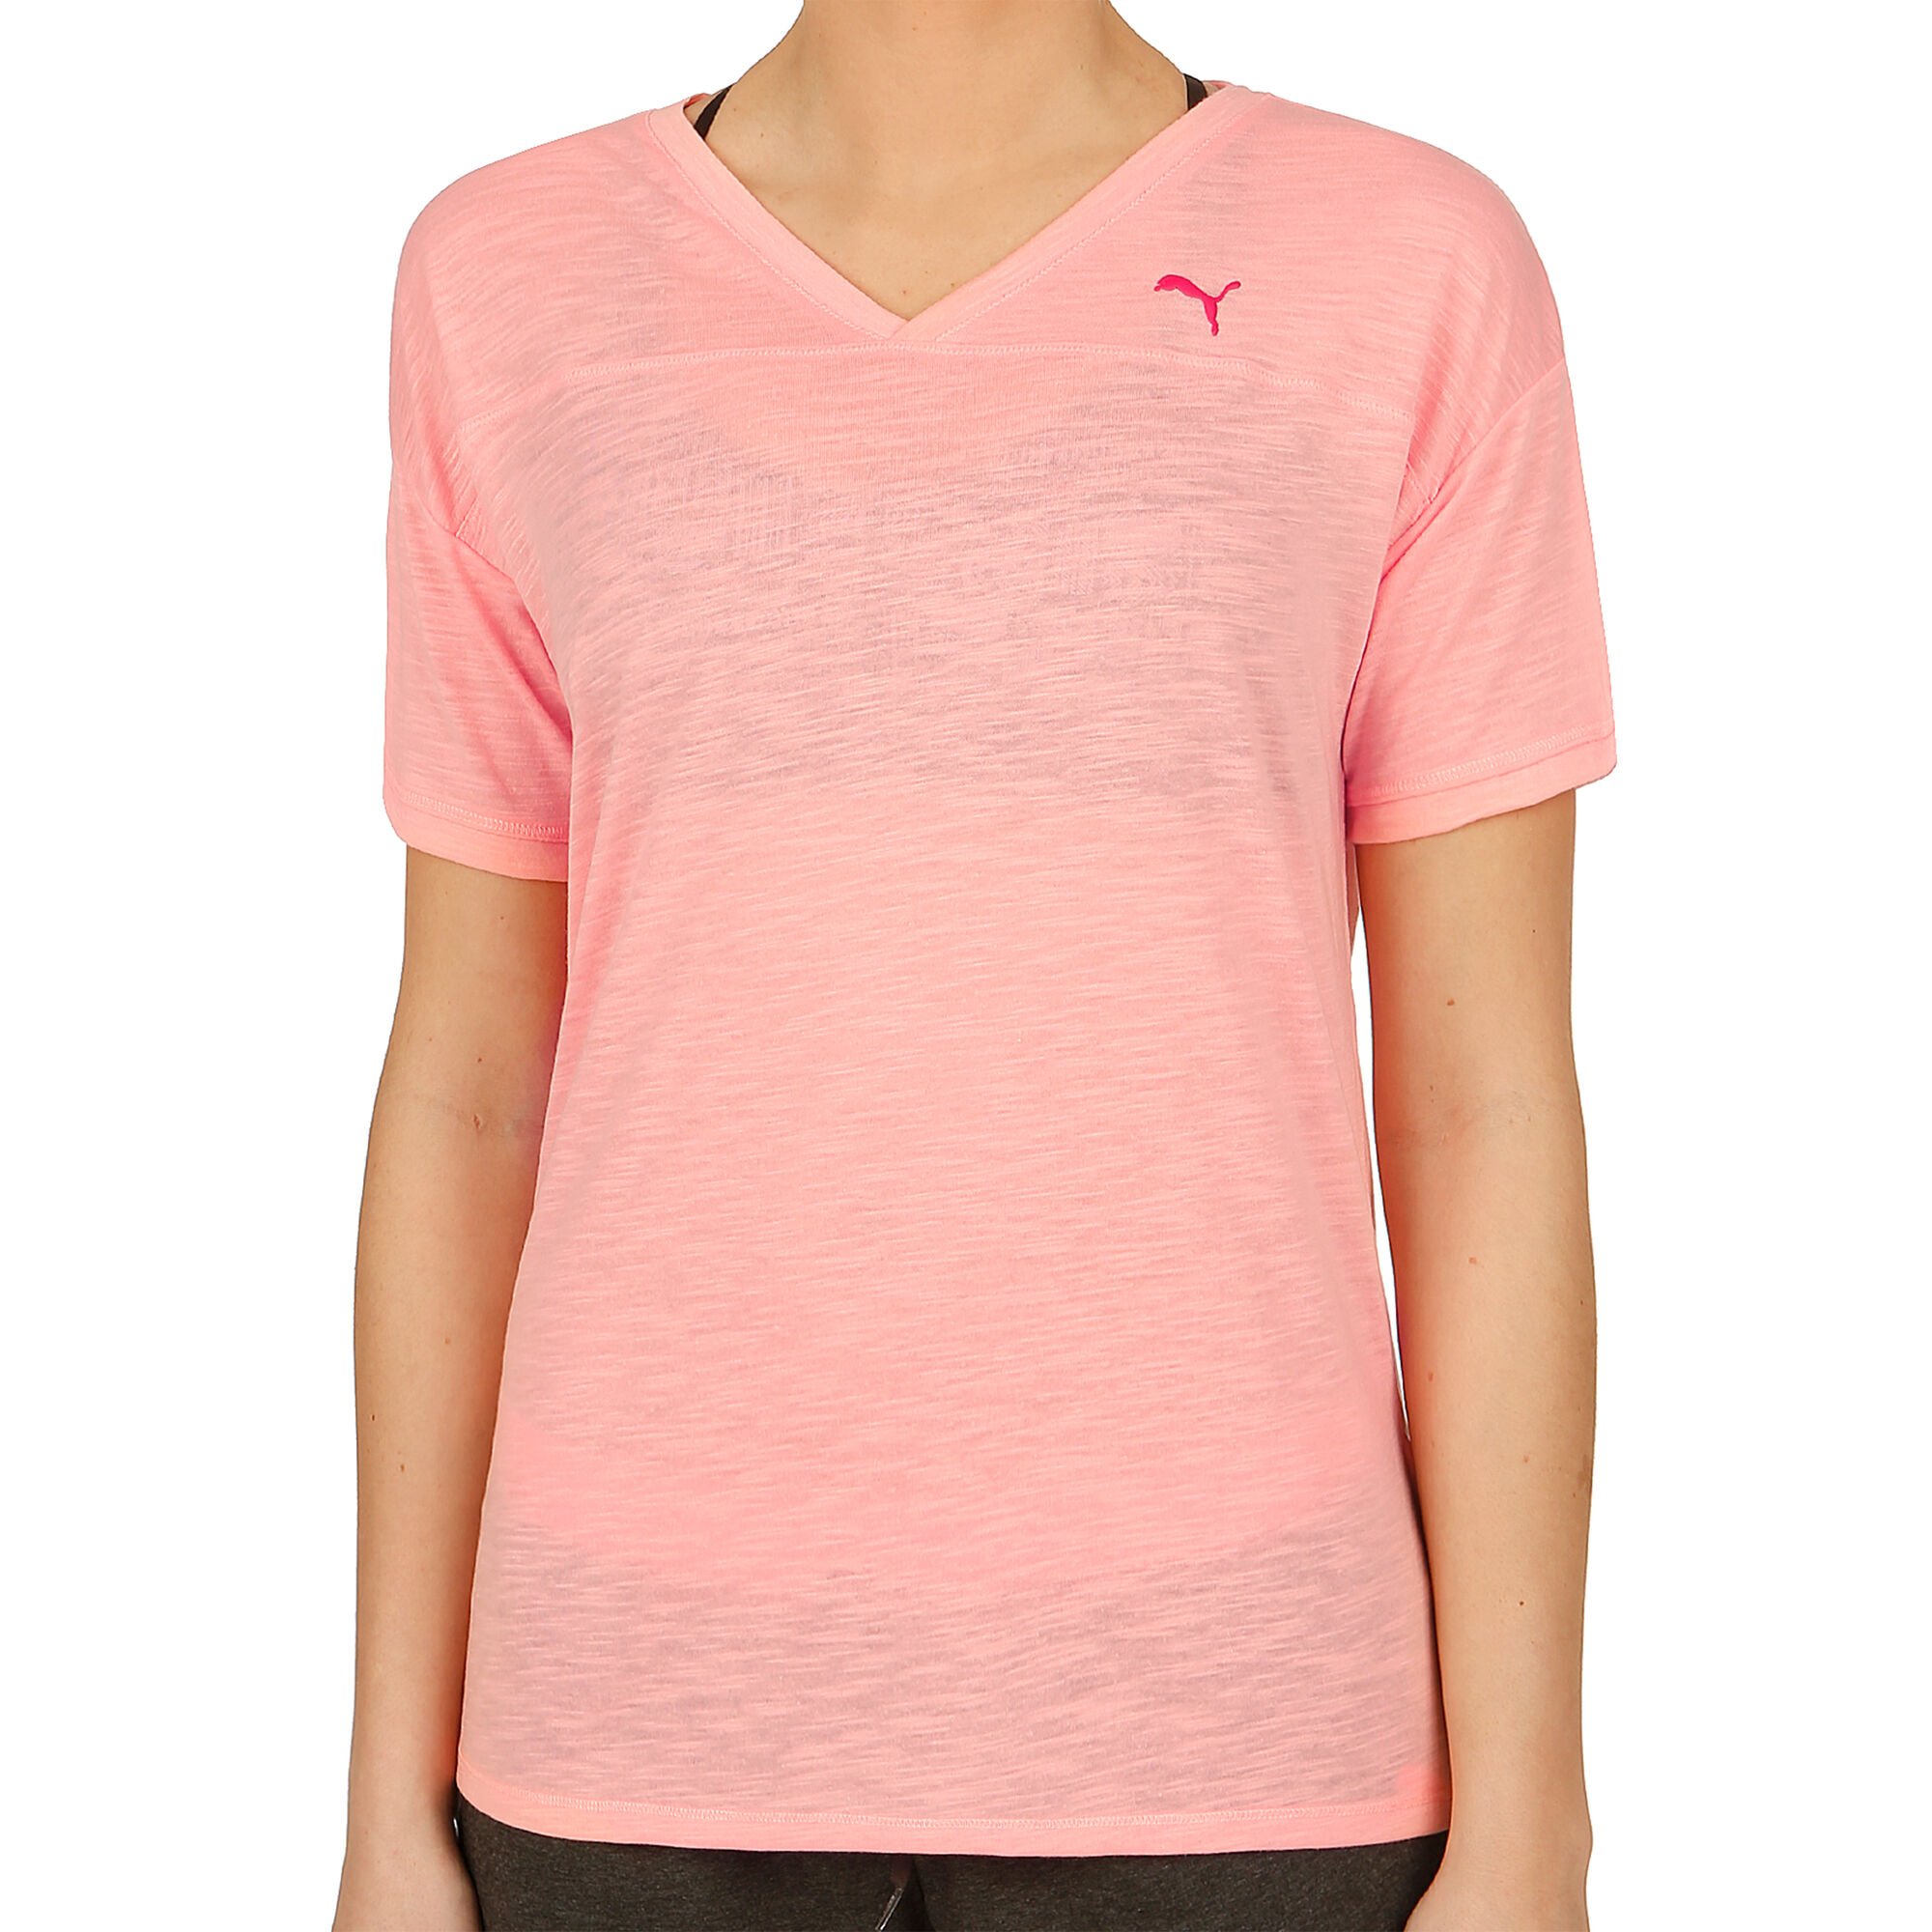 buy Puma Boyfriend T-Shirt Women - Pink, Pink online | Tennis-Point